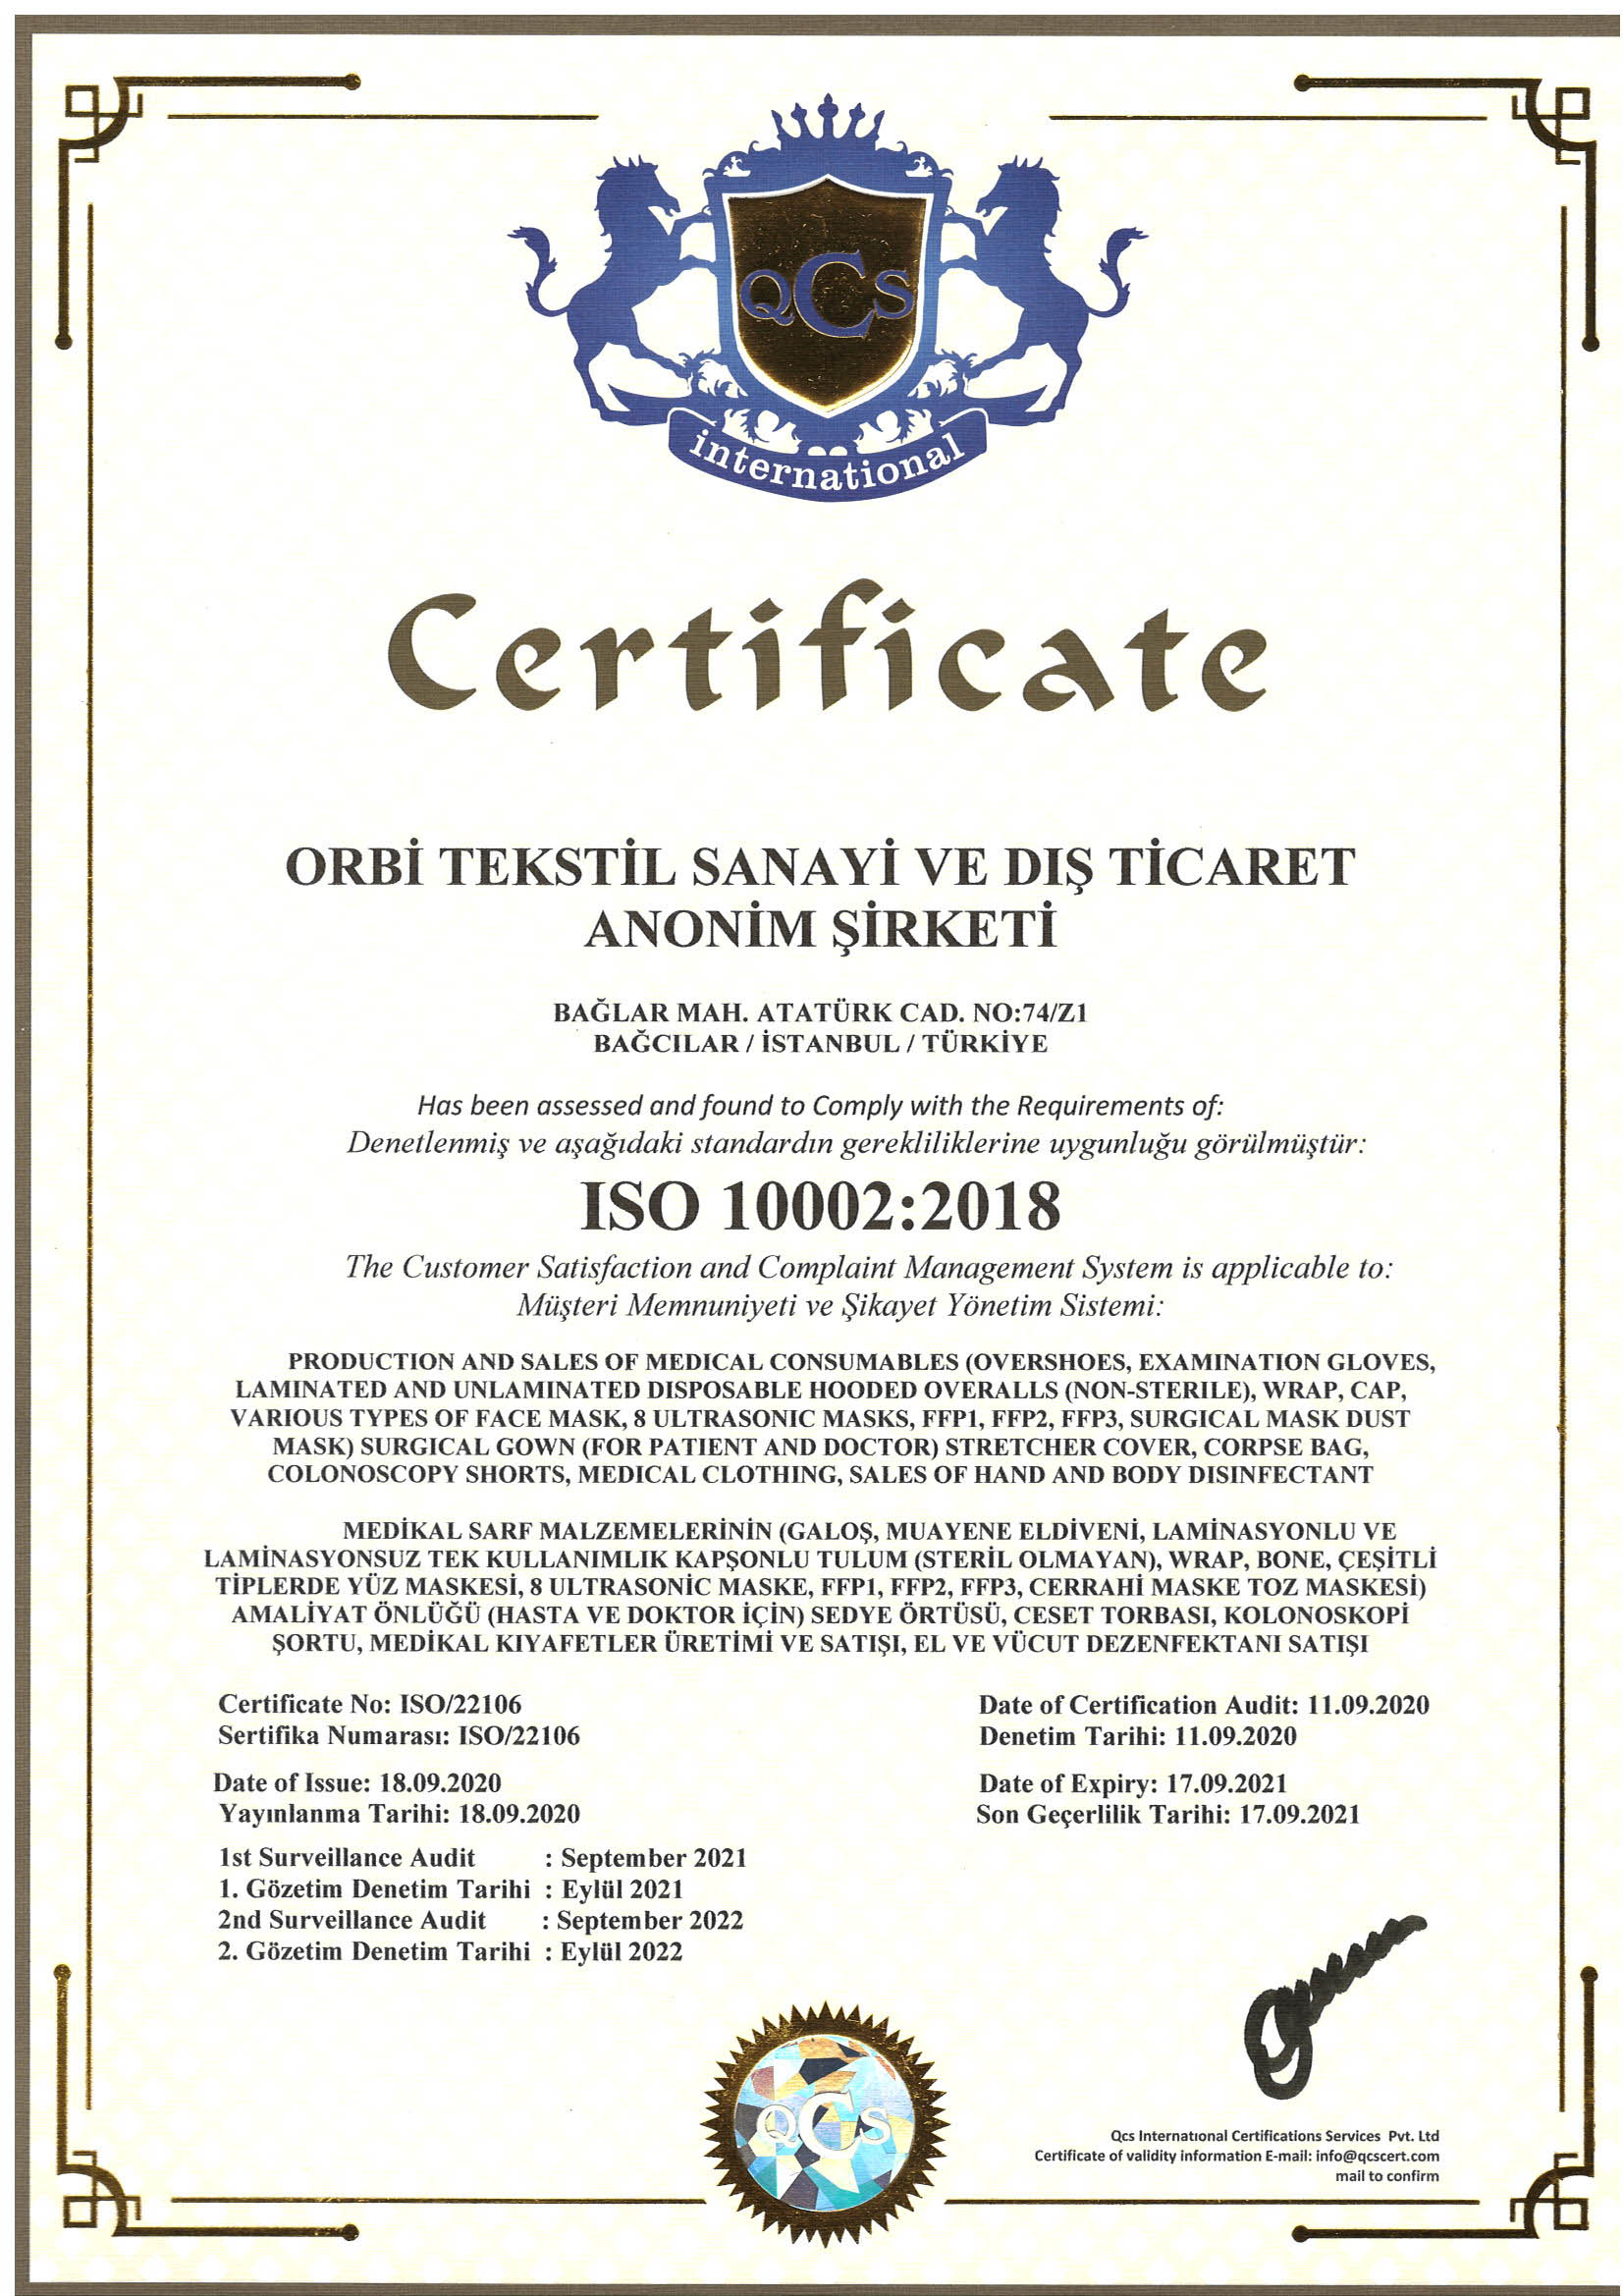 ORBİ ISO 10002